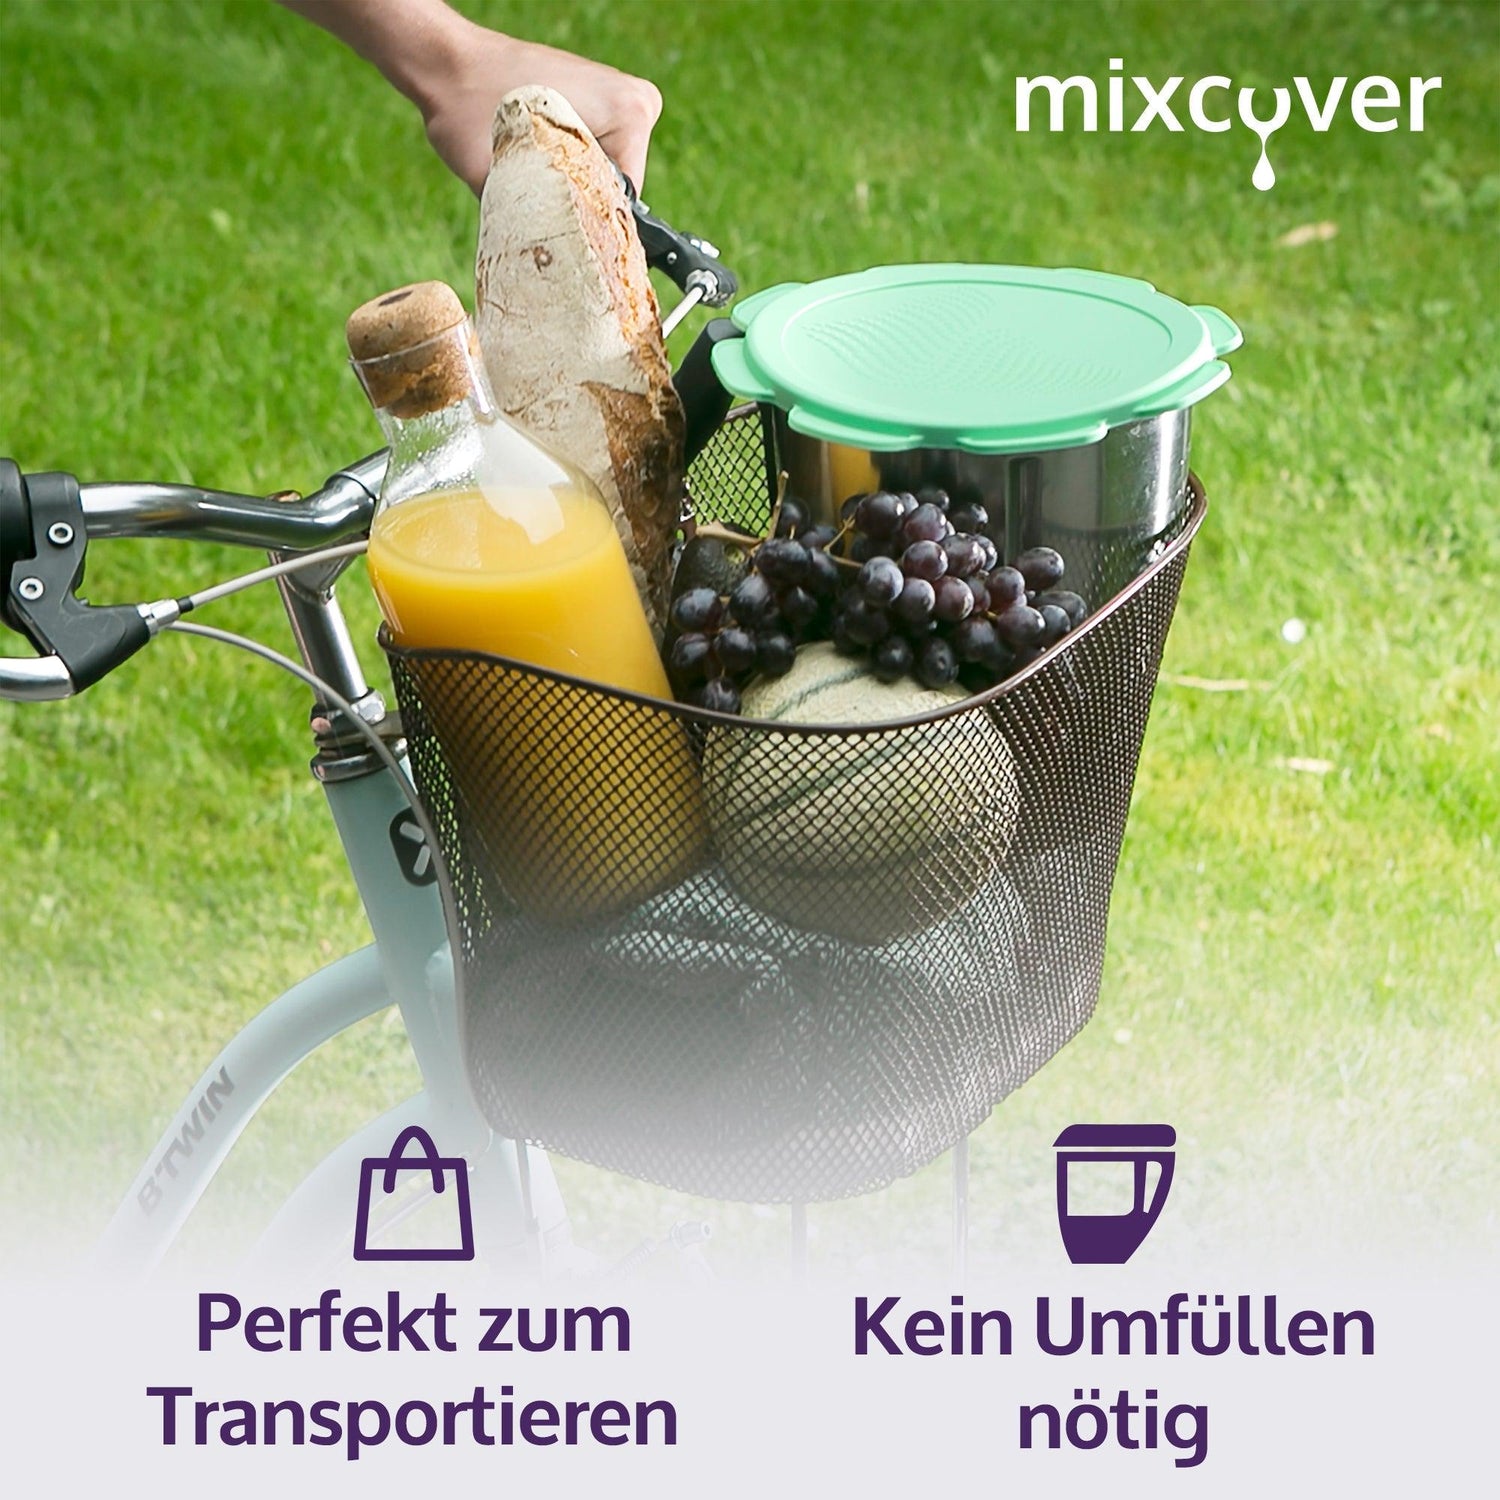 mixcover Silikon Deckel wasser- & geruchsdicht für Thermomix TM5 TM6 Friend Grün - Mixcover - Mixcover